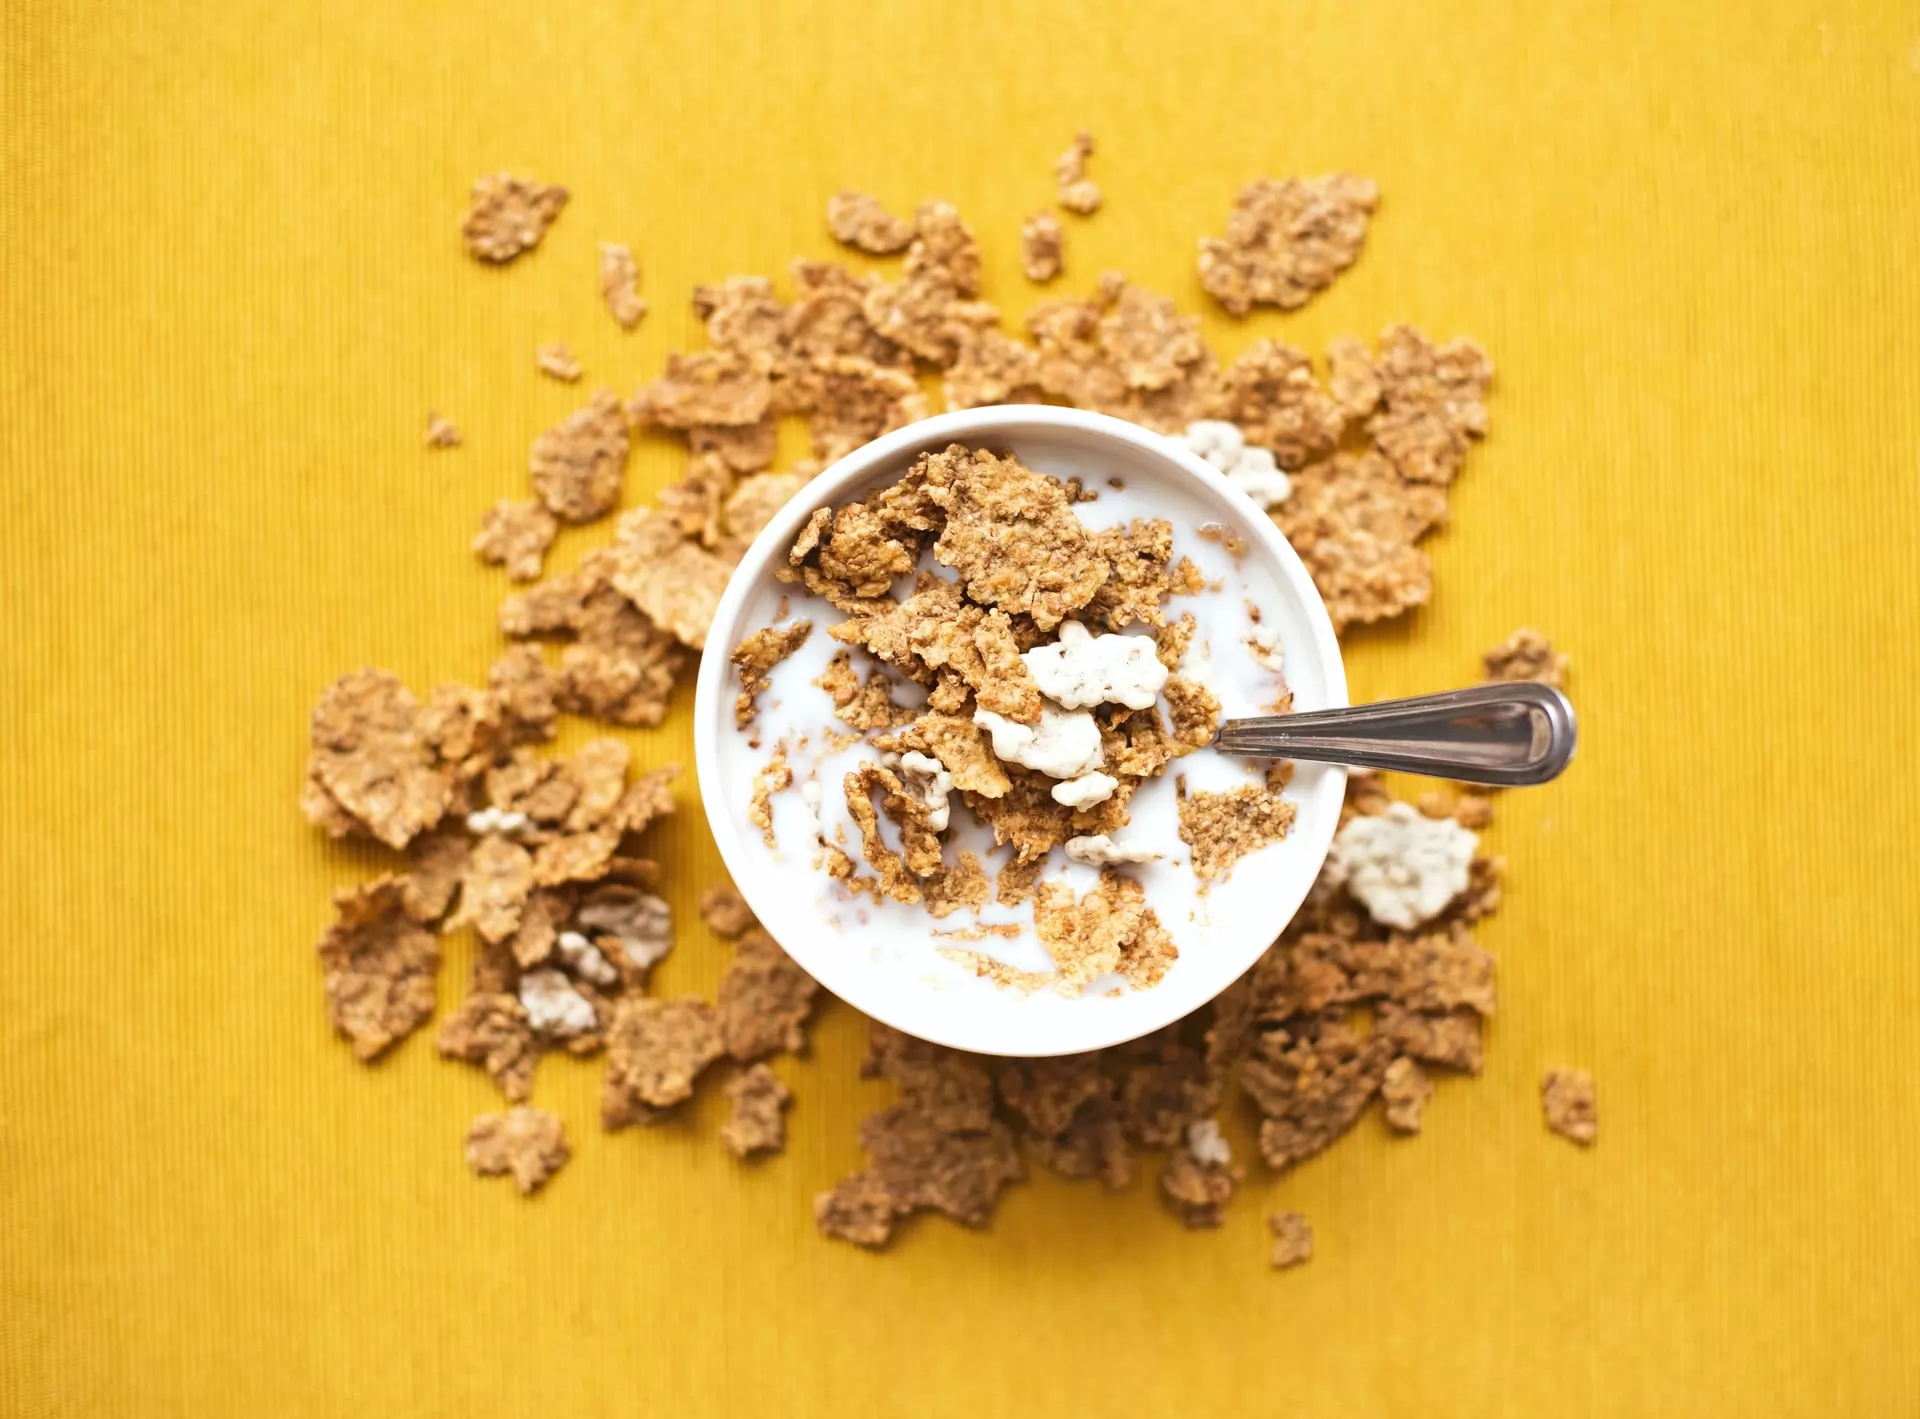 🌾Les Céréales Du Petit Déjeuner : Kellogg's, Nestlé, Jordans On  commençe par les Chocapic 